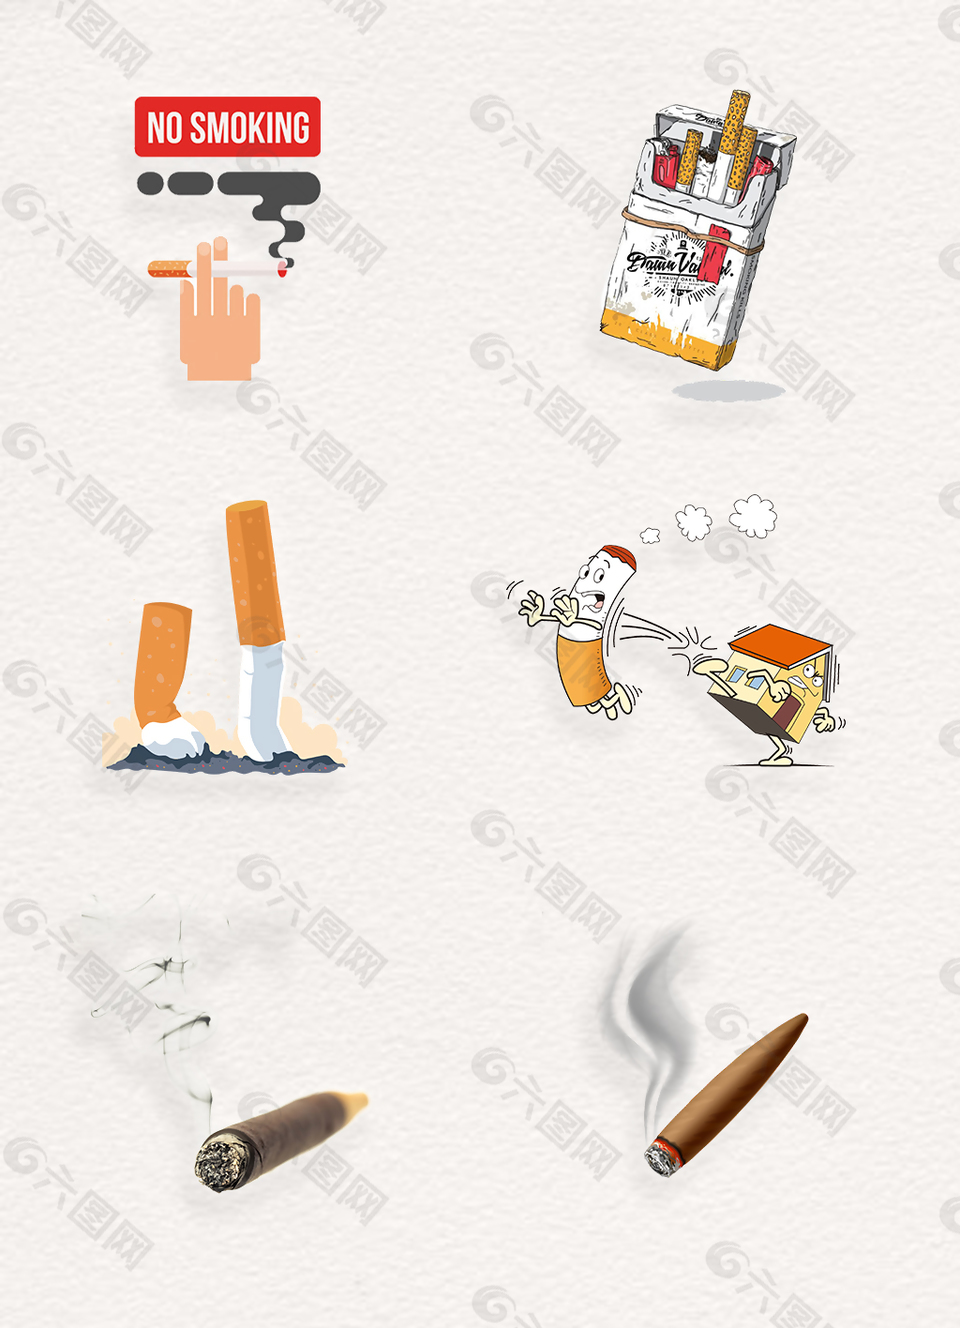 戒烟广告香烟烟雾png装饰物